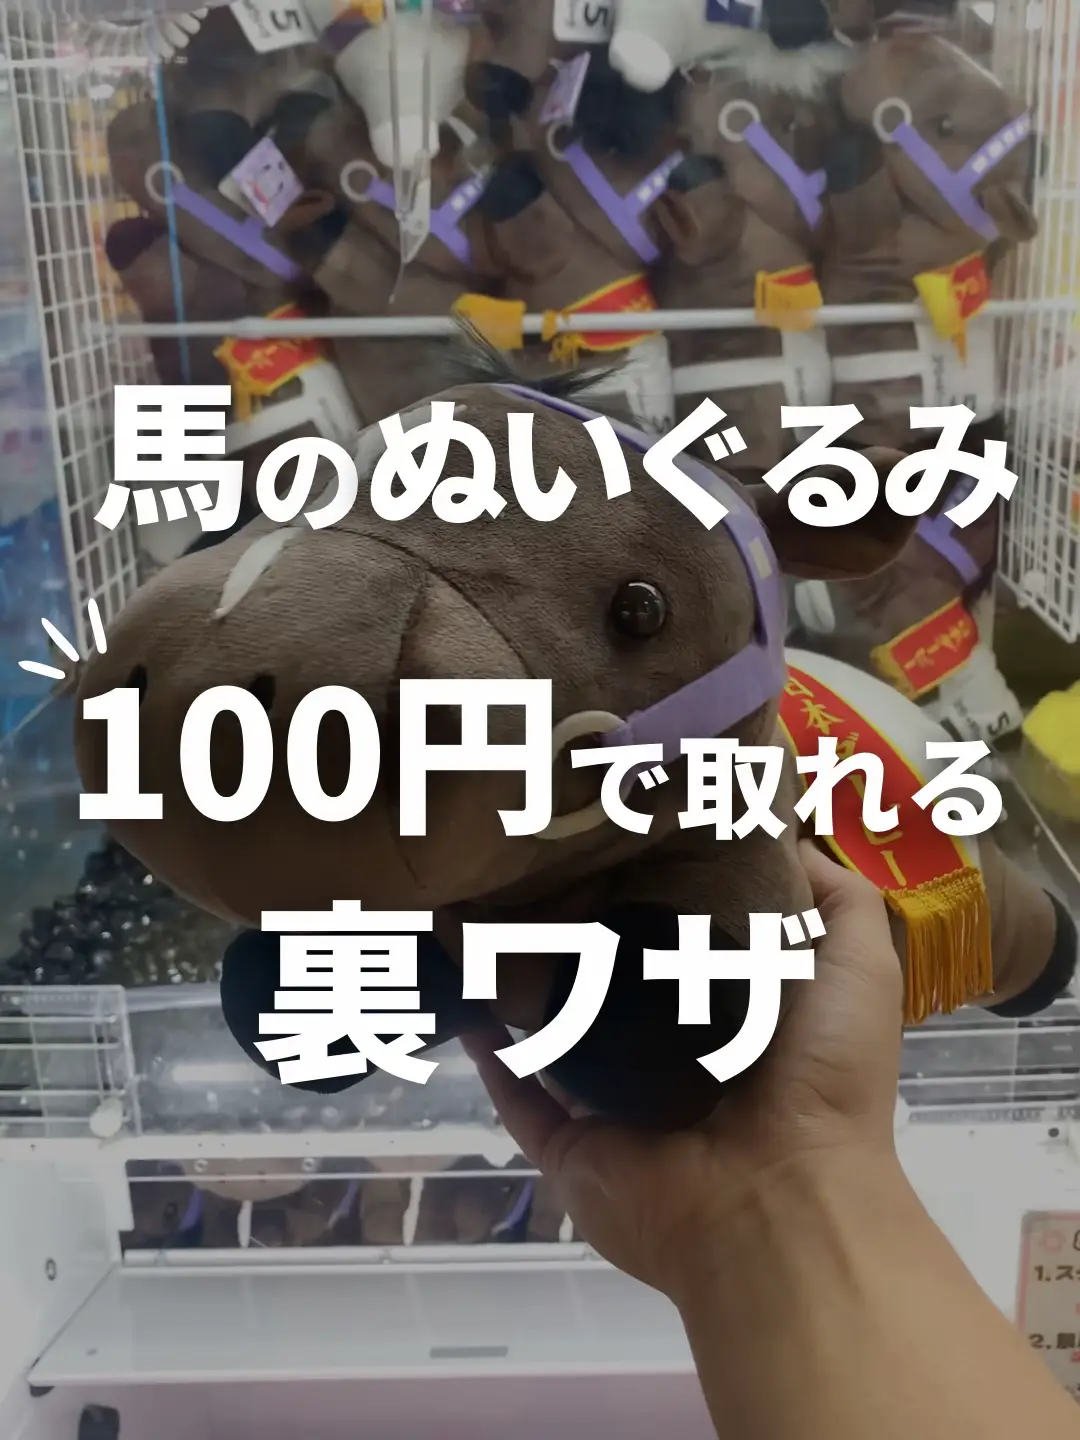 【必見】馬のぬいぐるみを100円でゲットする裏ワザ!